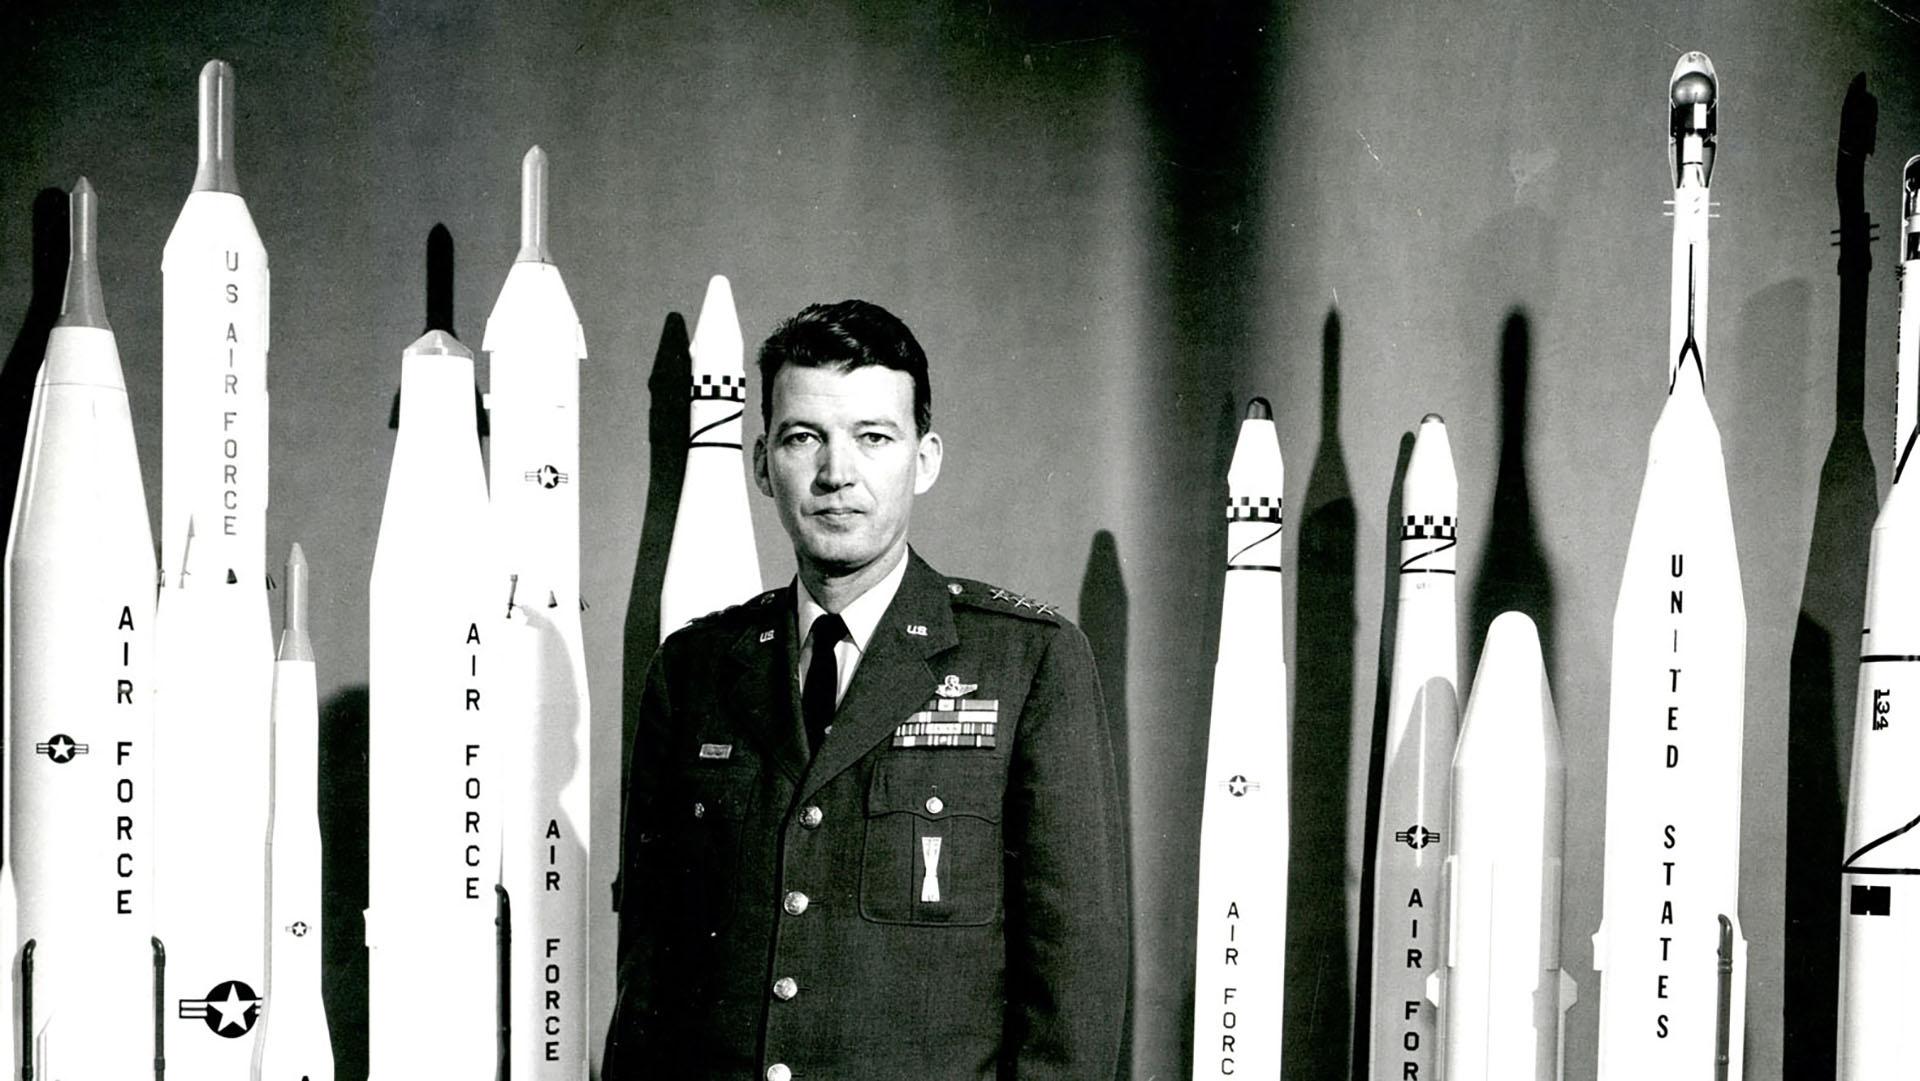 Air Force General Bernard Schriever, c. 1958